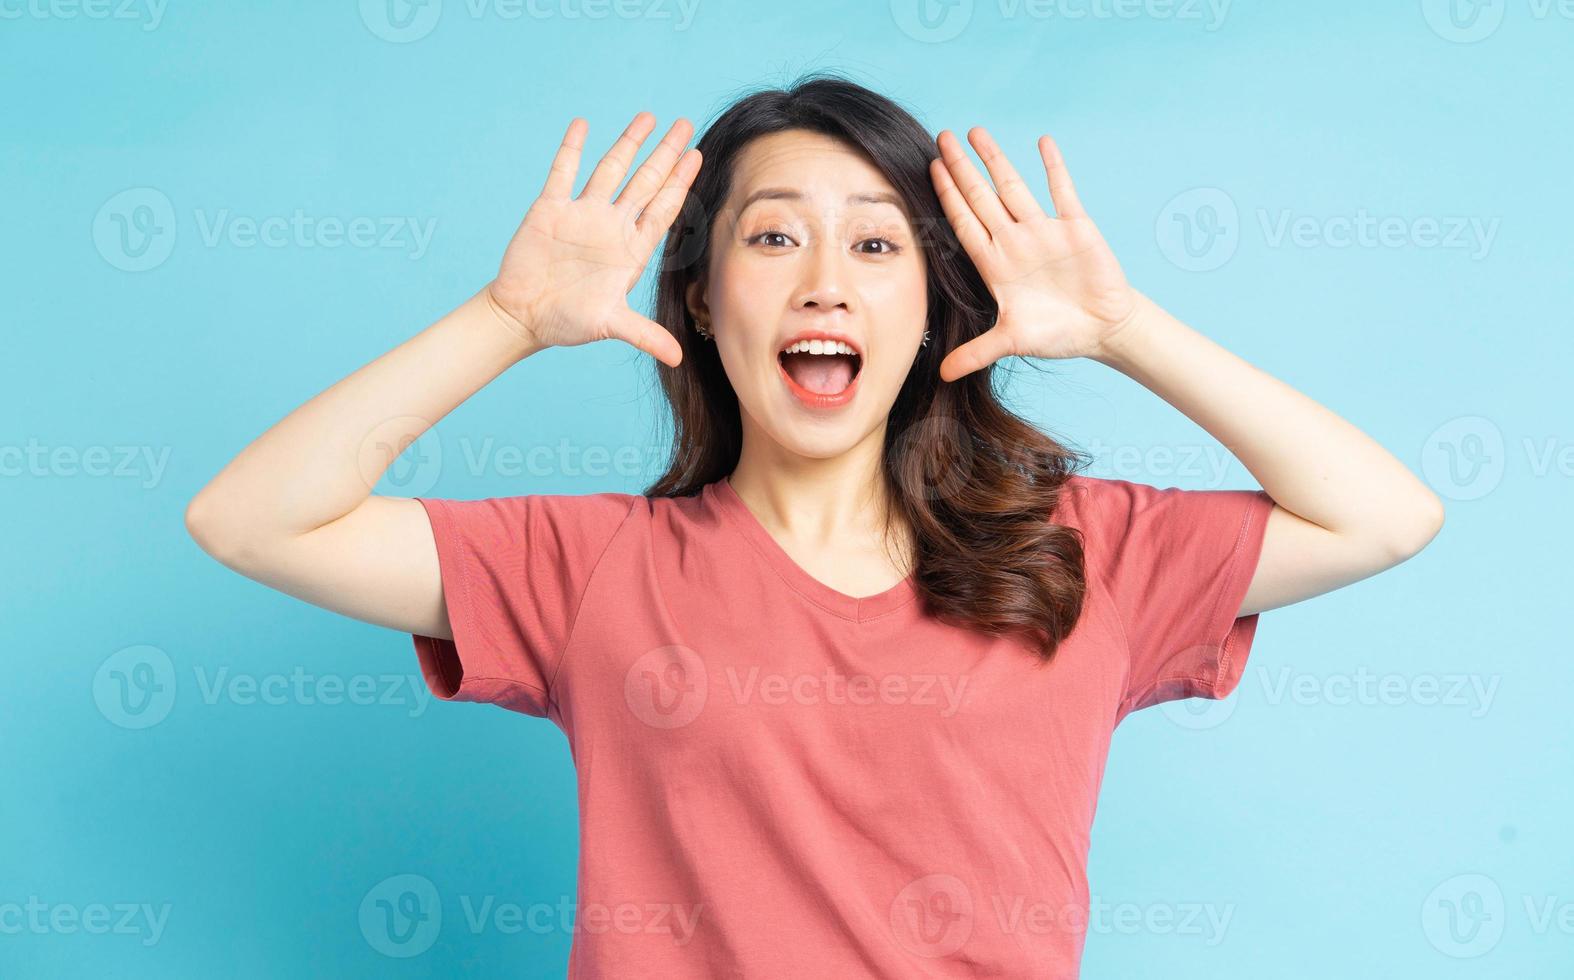 la hermosa mujer asiática gritó de alegría foto